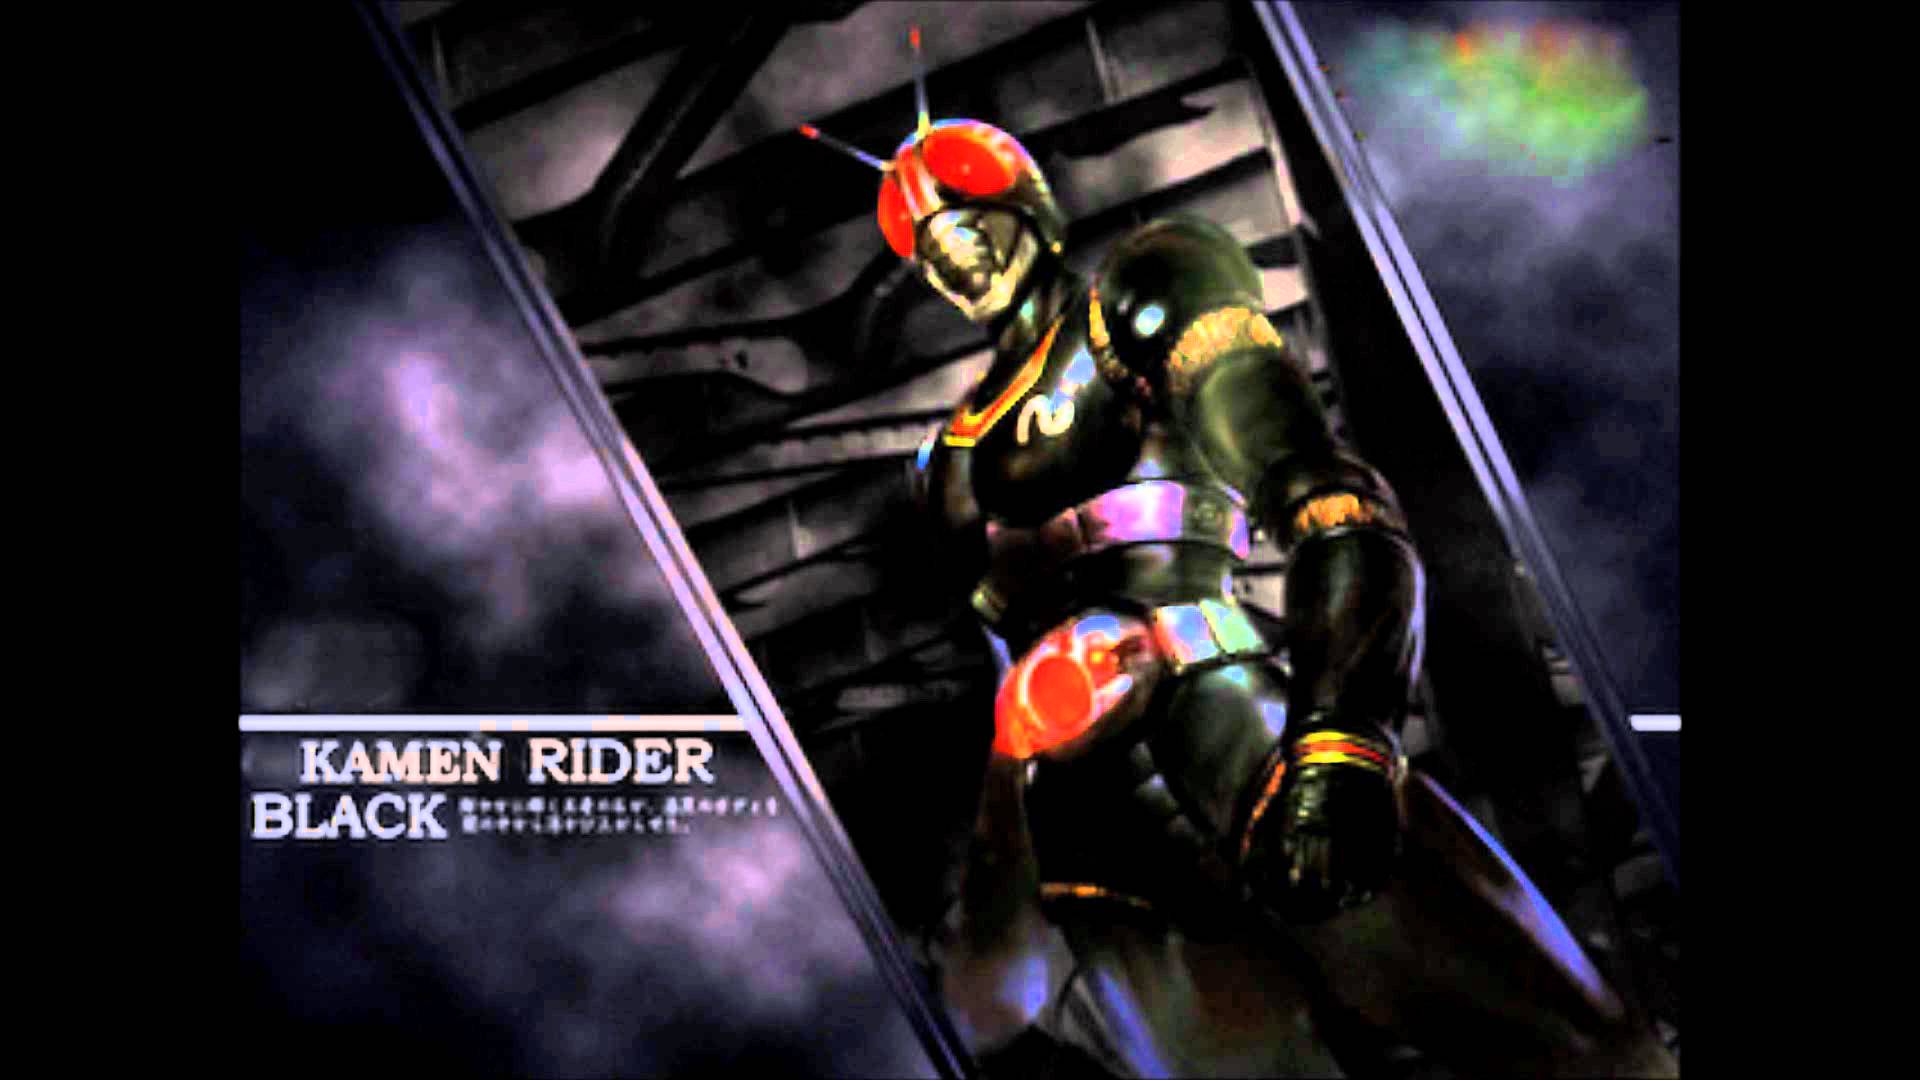 kamen rider black ending theme OST - YouTube